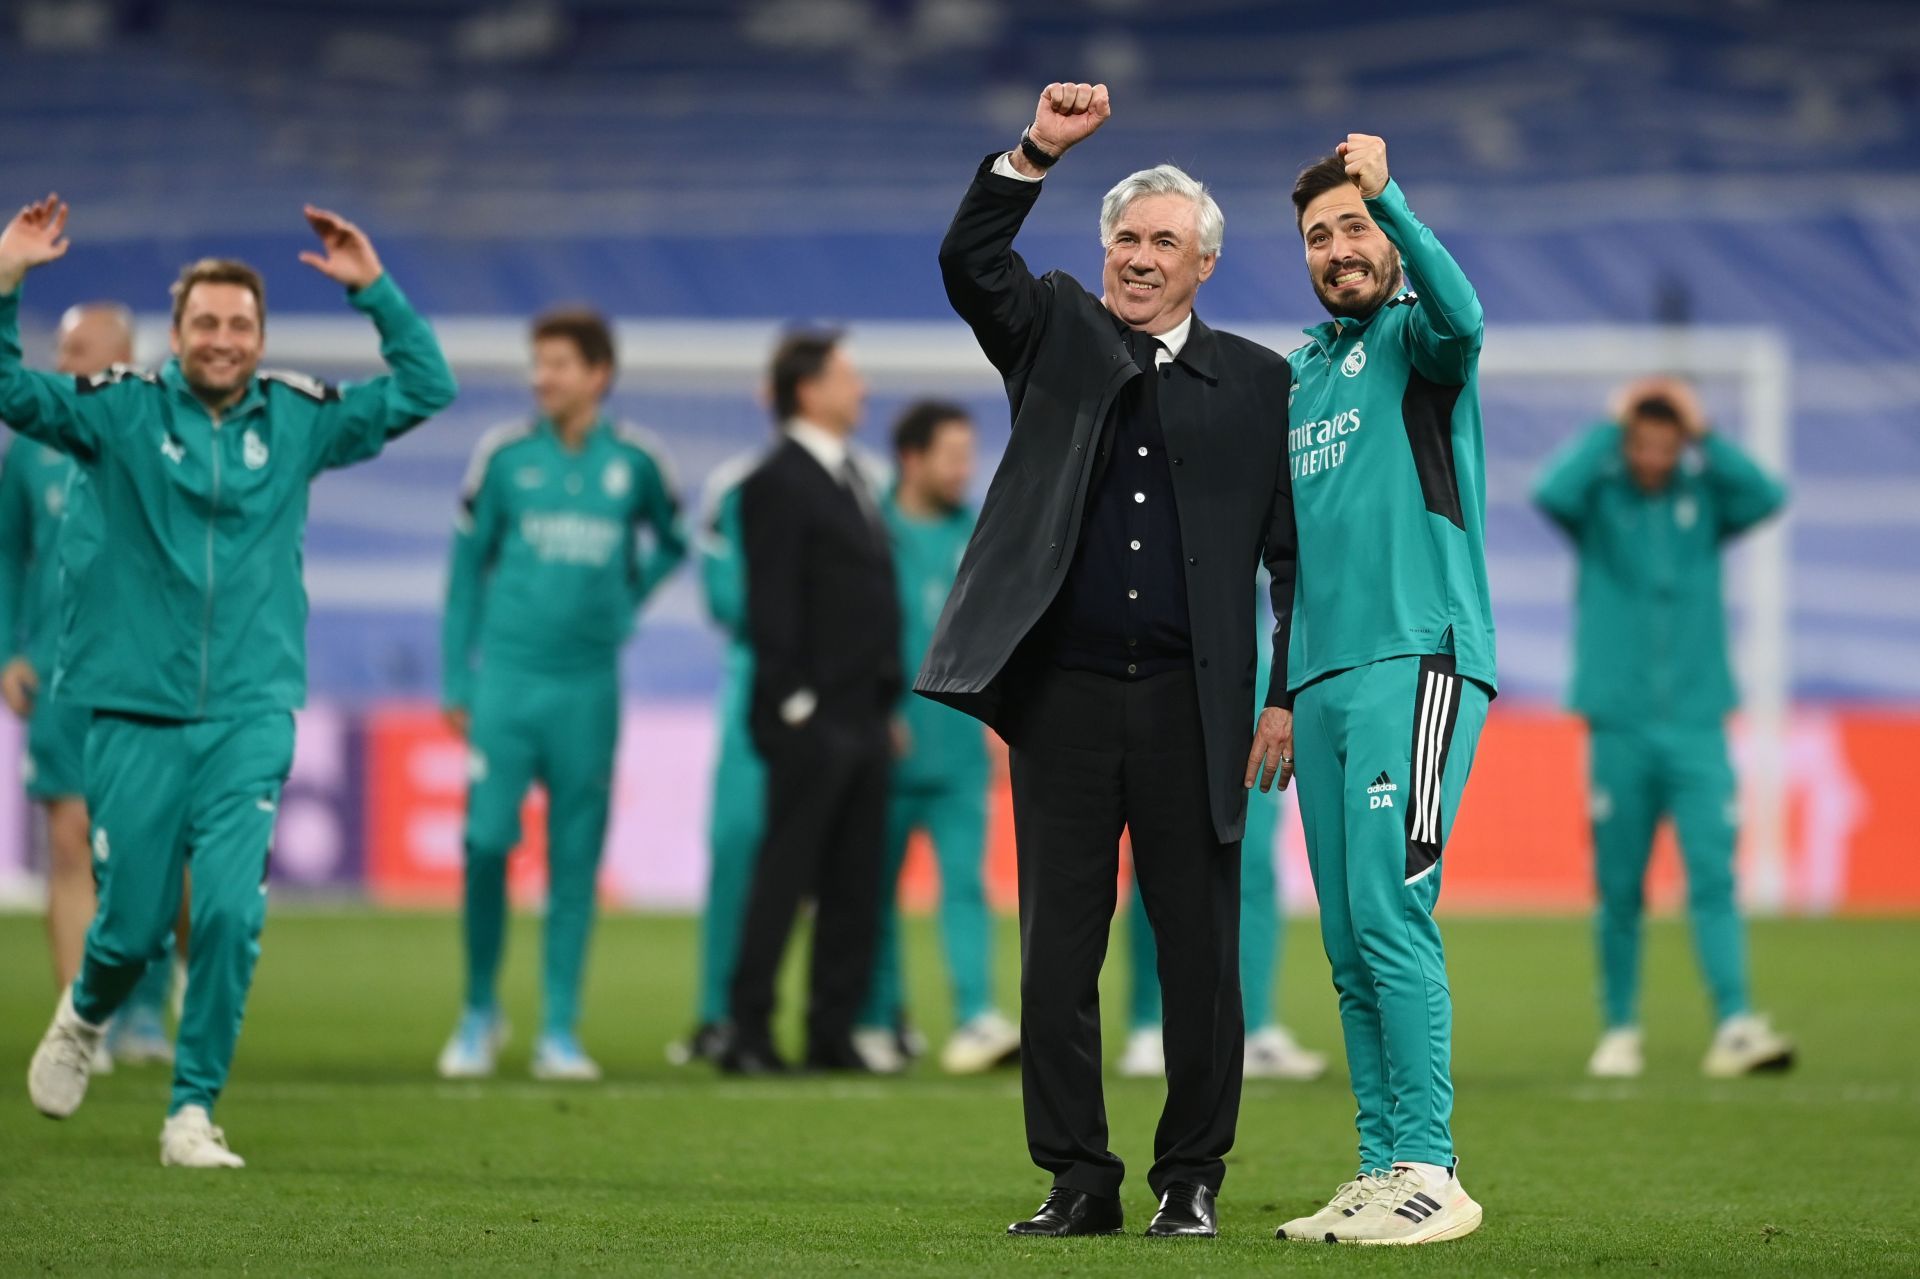 Carlo Ancelotti celebrates with Davide Ancelotti.